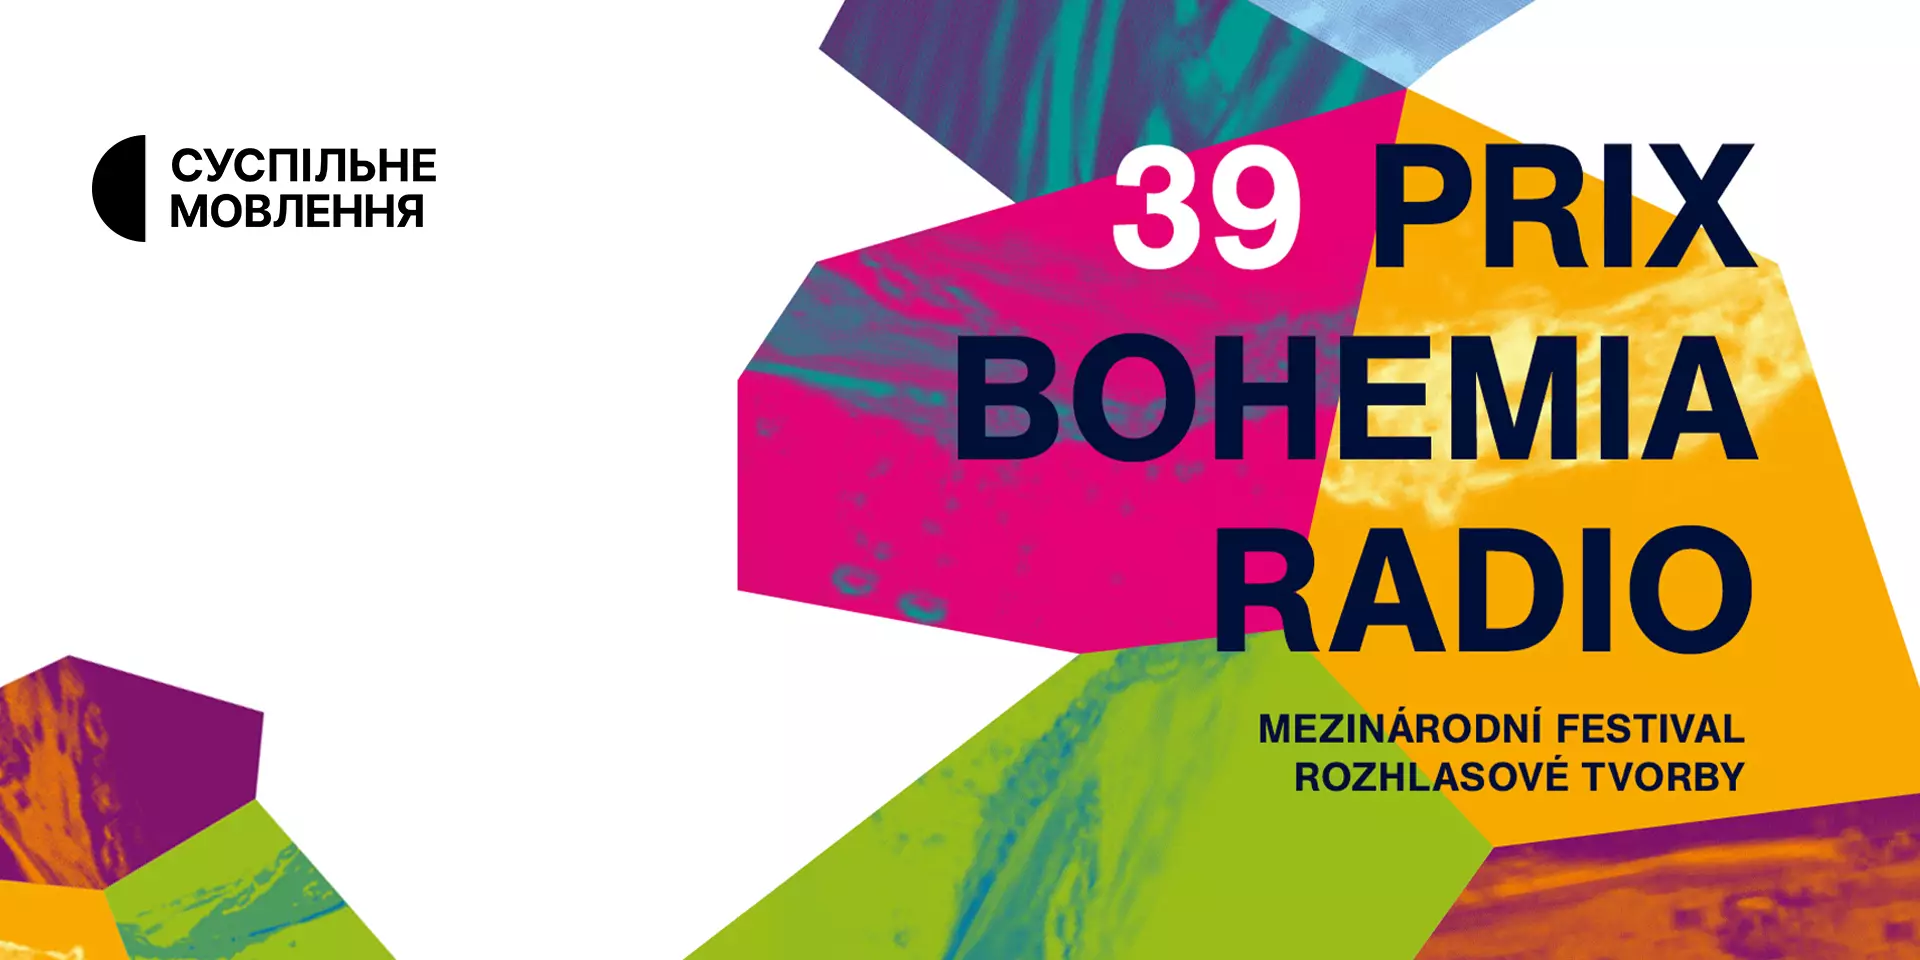 Третє місце на Prix Bohemia Radio посів репортаж Суспільного